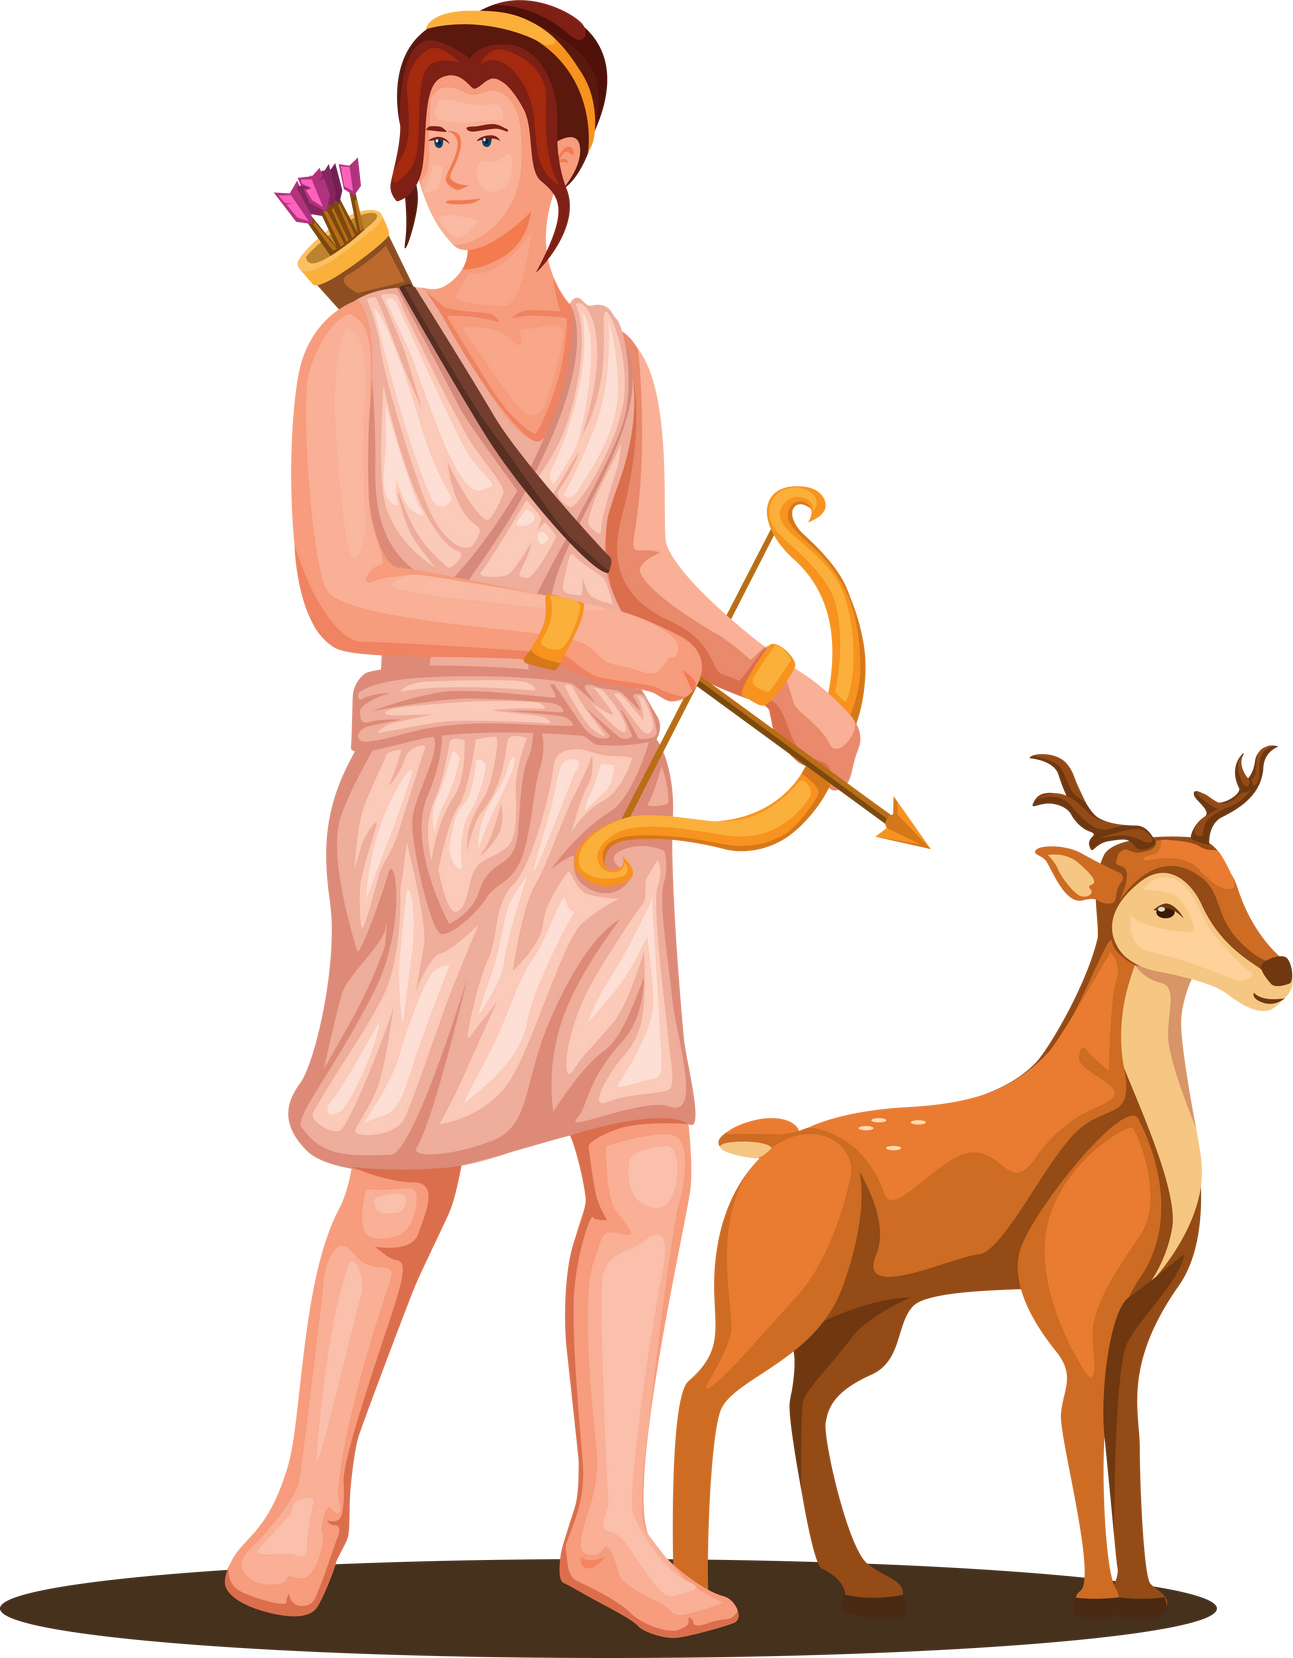 The Greek Goddess Artemis holding bow with deer figure Greek Mythology character concept illustration